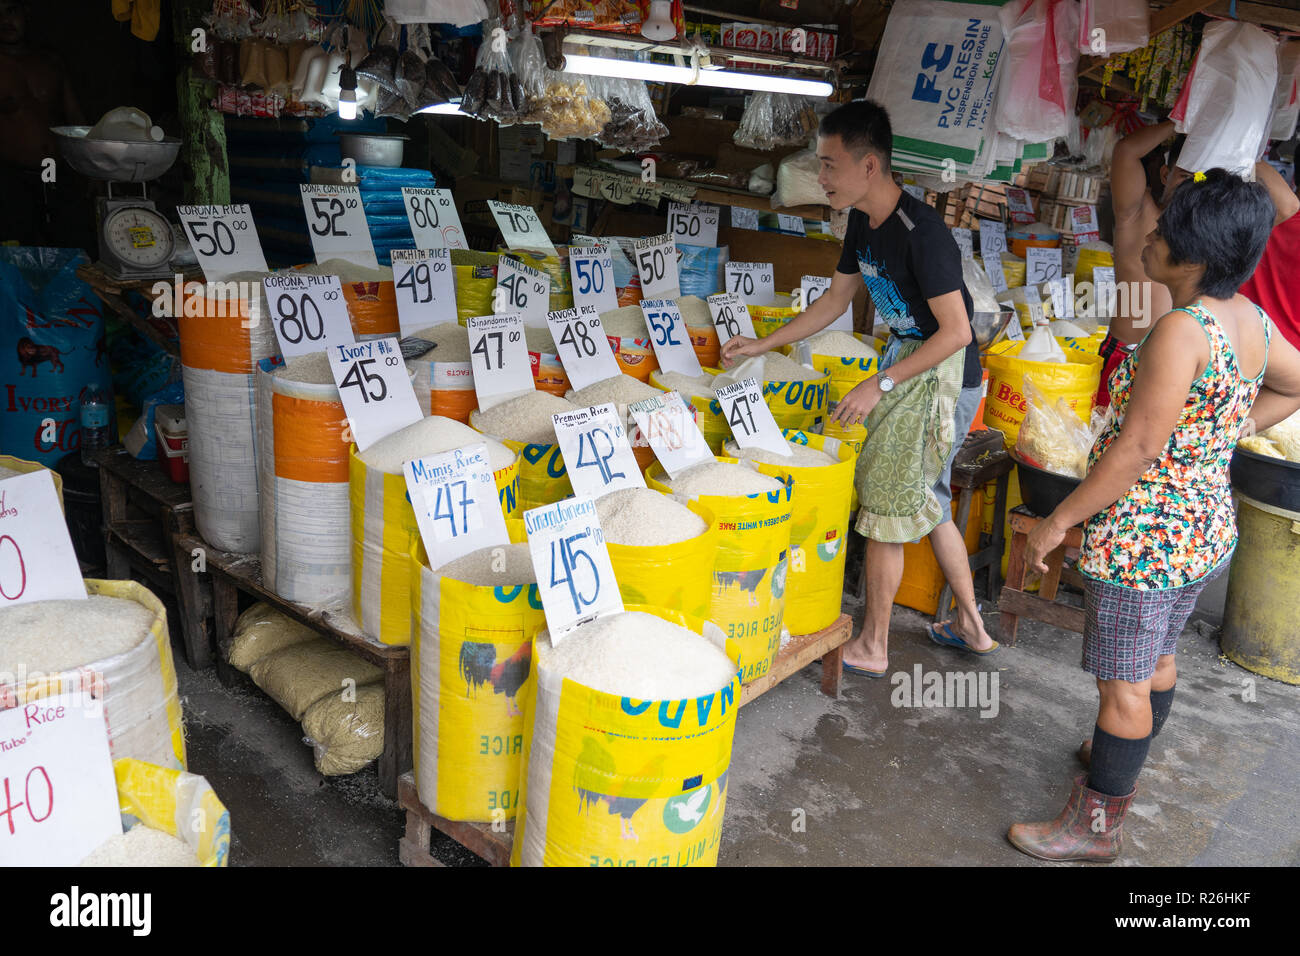 Verschiedene Reissorten verkauft auf einem Markt in der Kohlenstoffmarkt, Cebu City abgewürgt. Könnte auch als Konzept Bild illustriert Preiserhöhung verwendet werden. Stockfoto